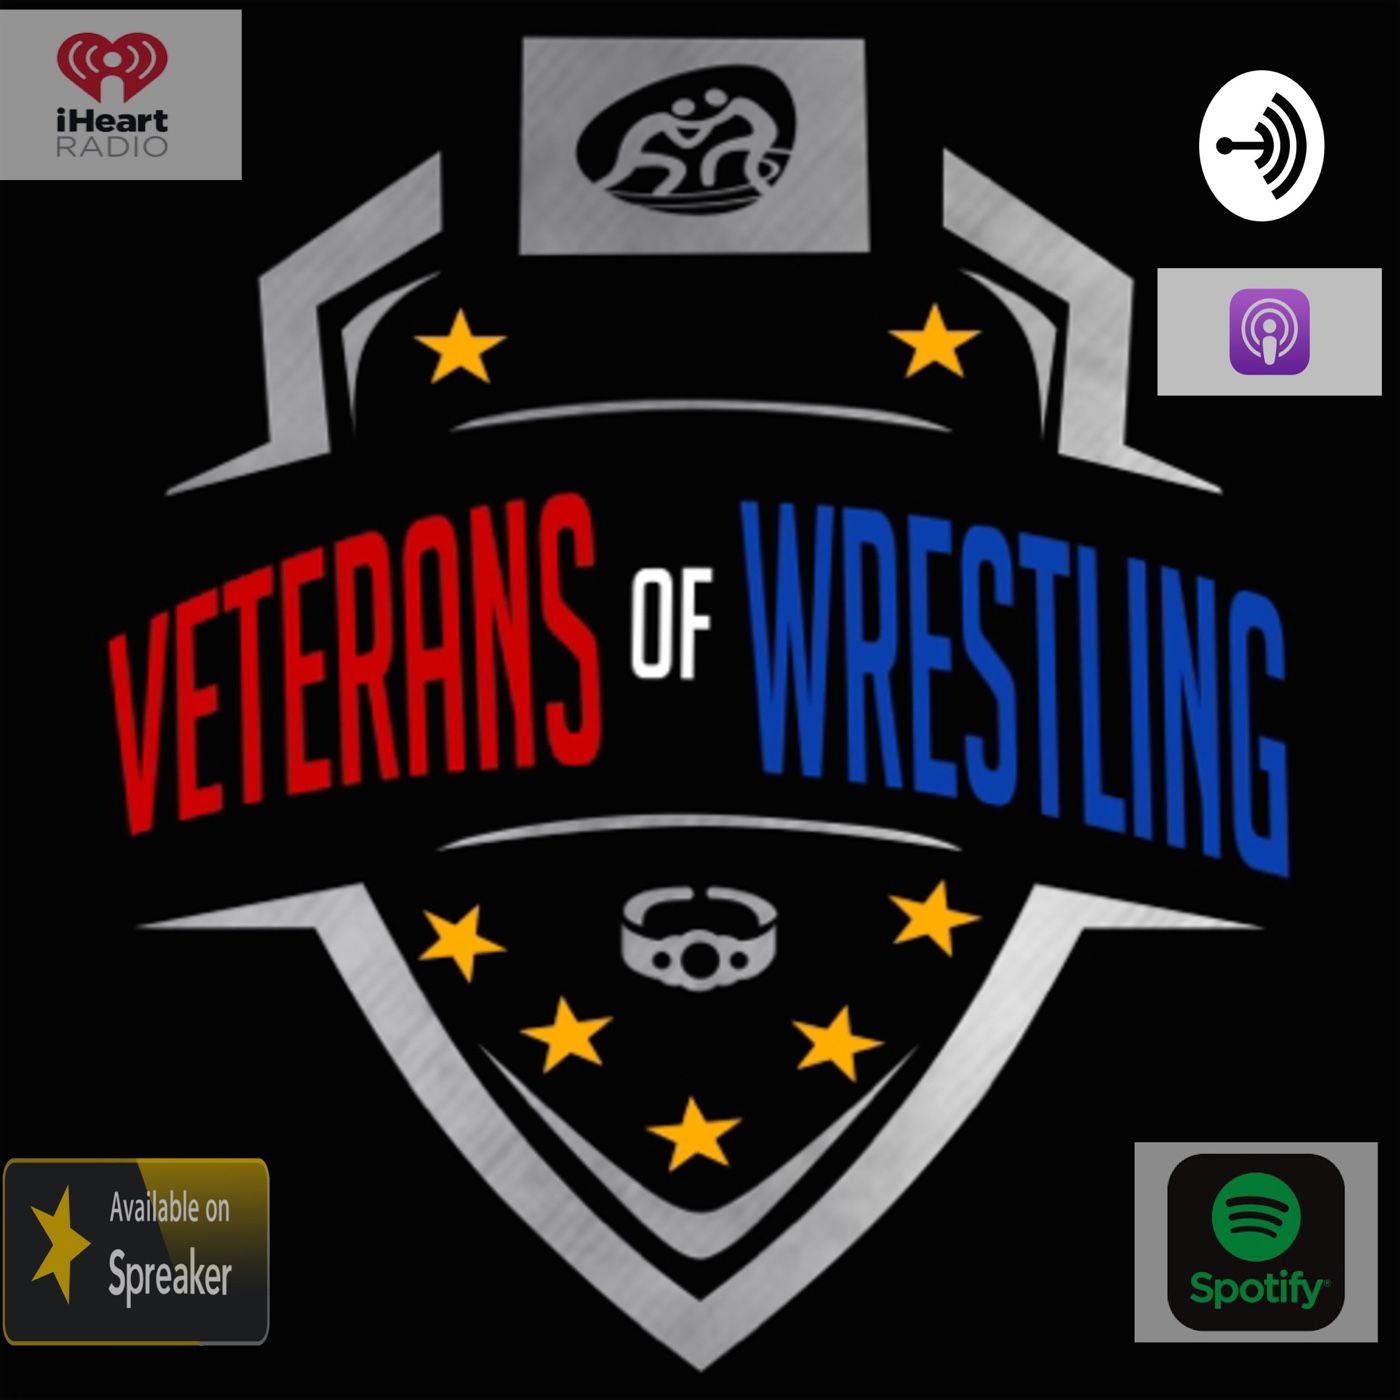 Veterans Of Wrestling